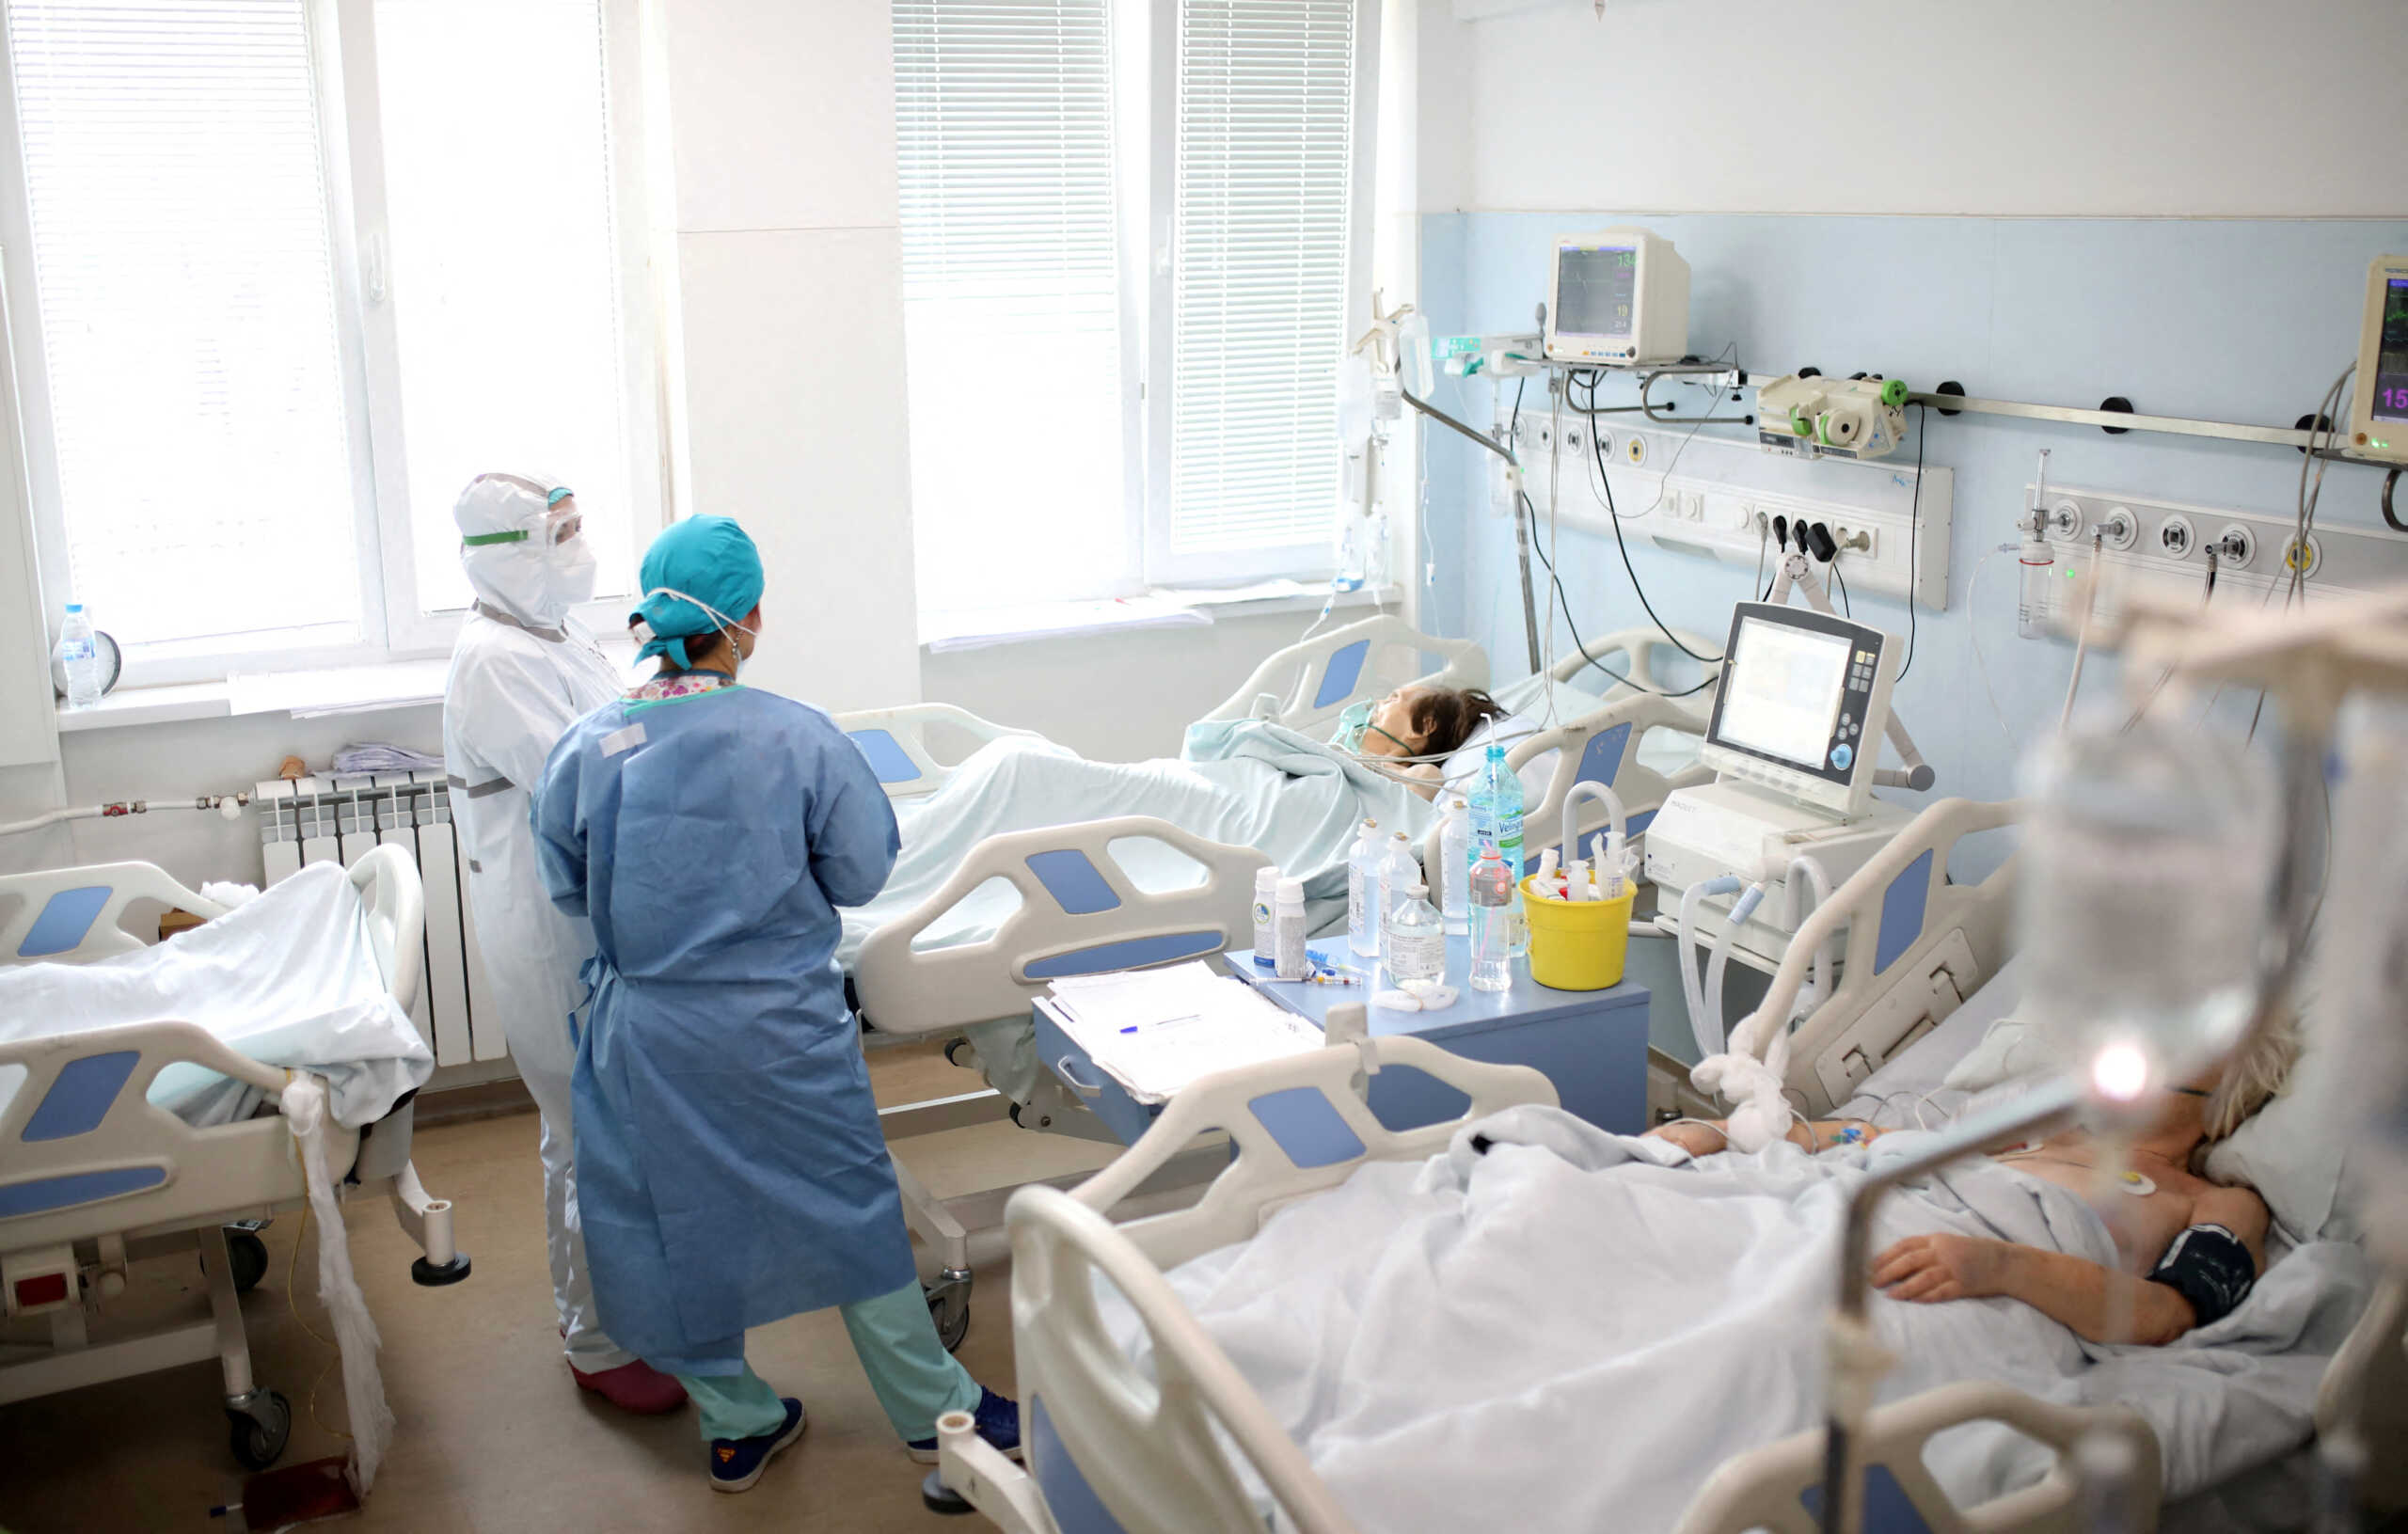 Κορονοϊός: Σε ειδικό box η νοσηλεία των ασθενών στην Εντατική, μετά την κατάργηση των ΜΕΘ Covid